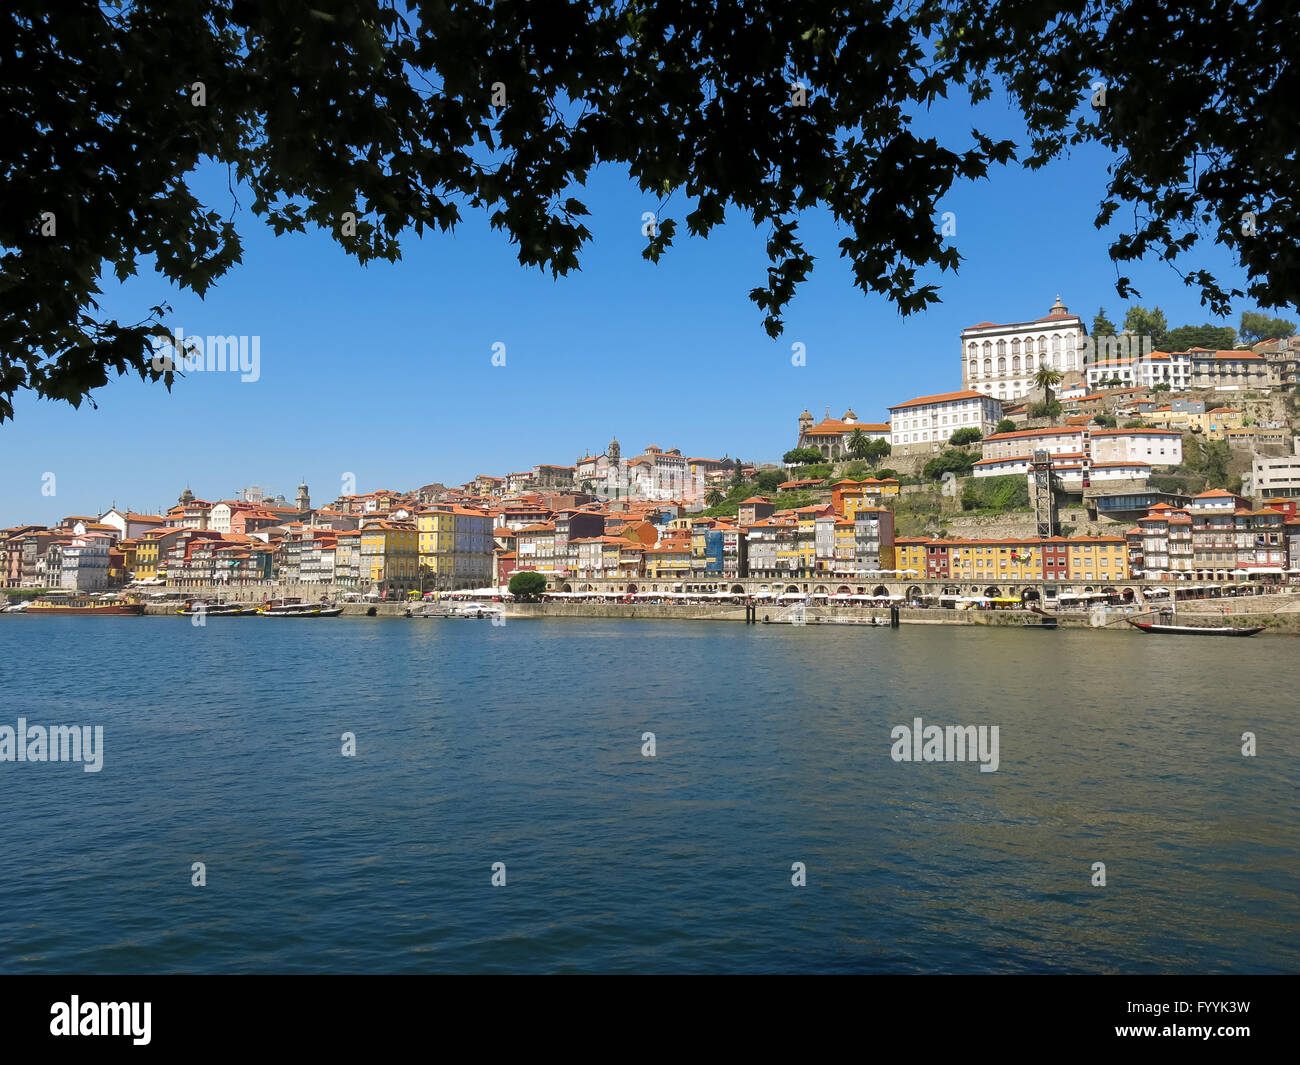 Ribeira District and quay alongside Douro River, Porto, Portugal Stock Photo